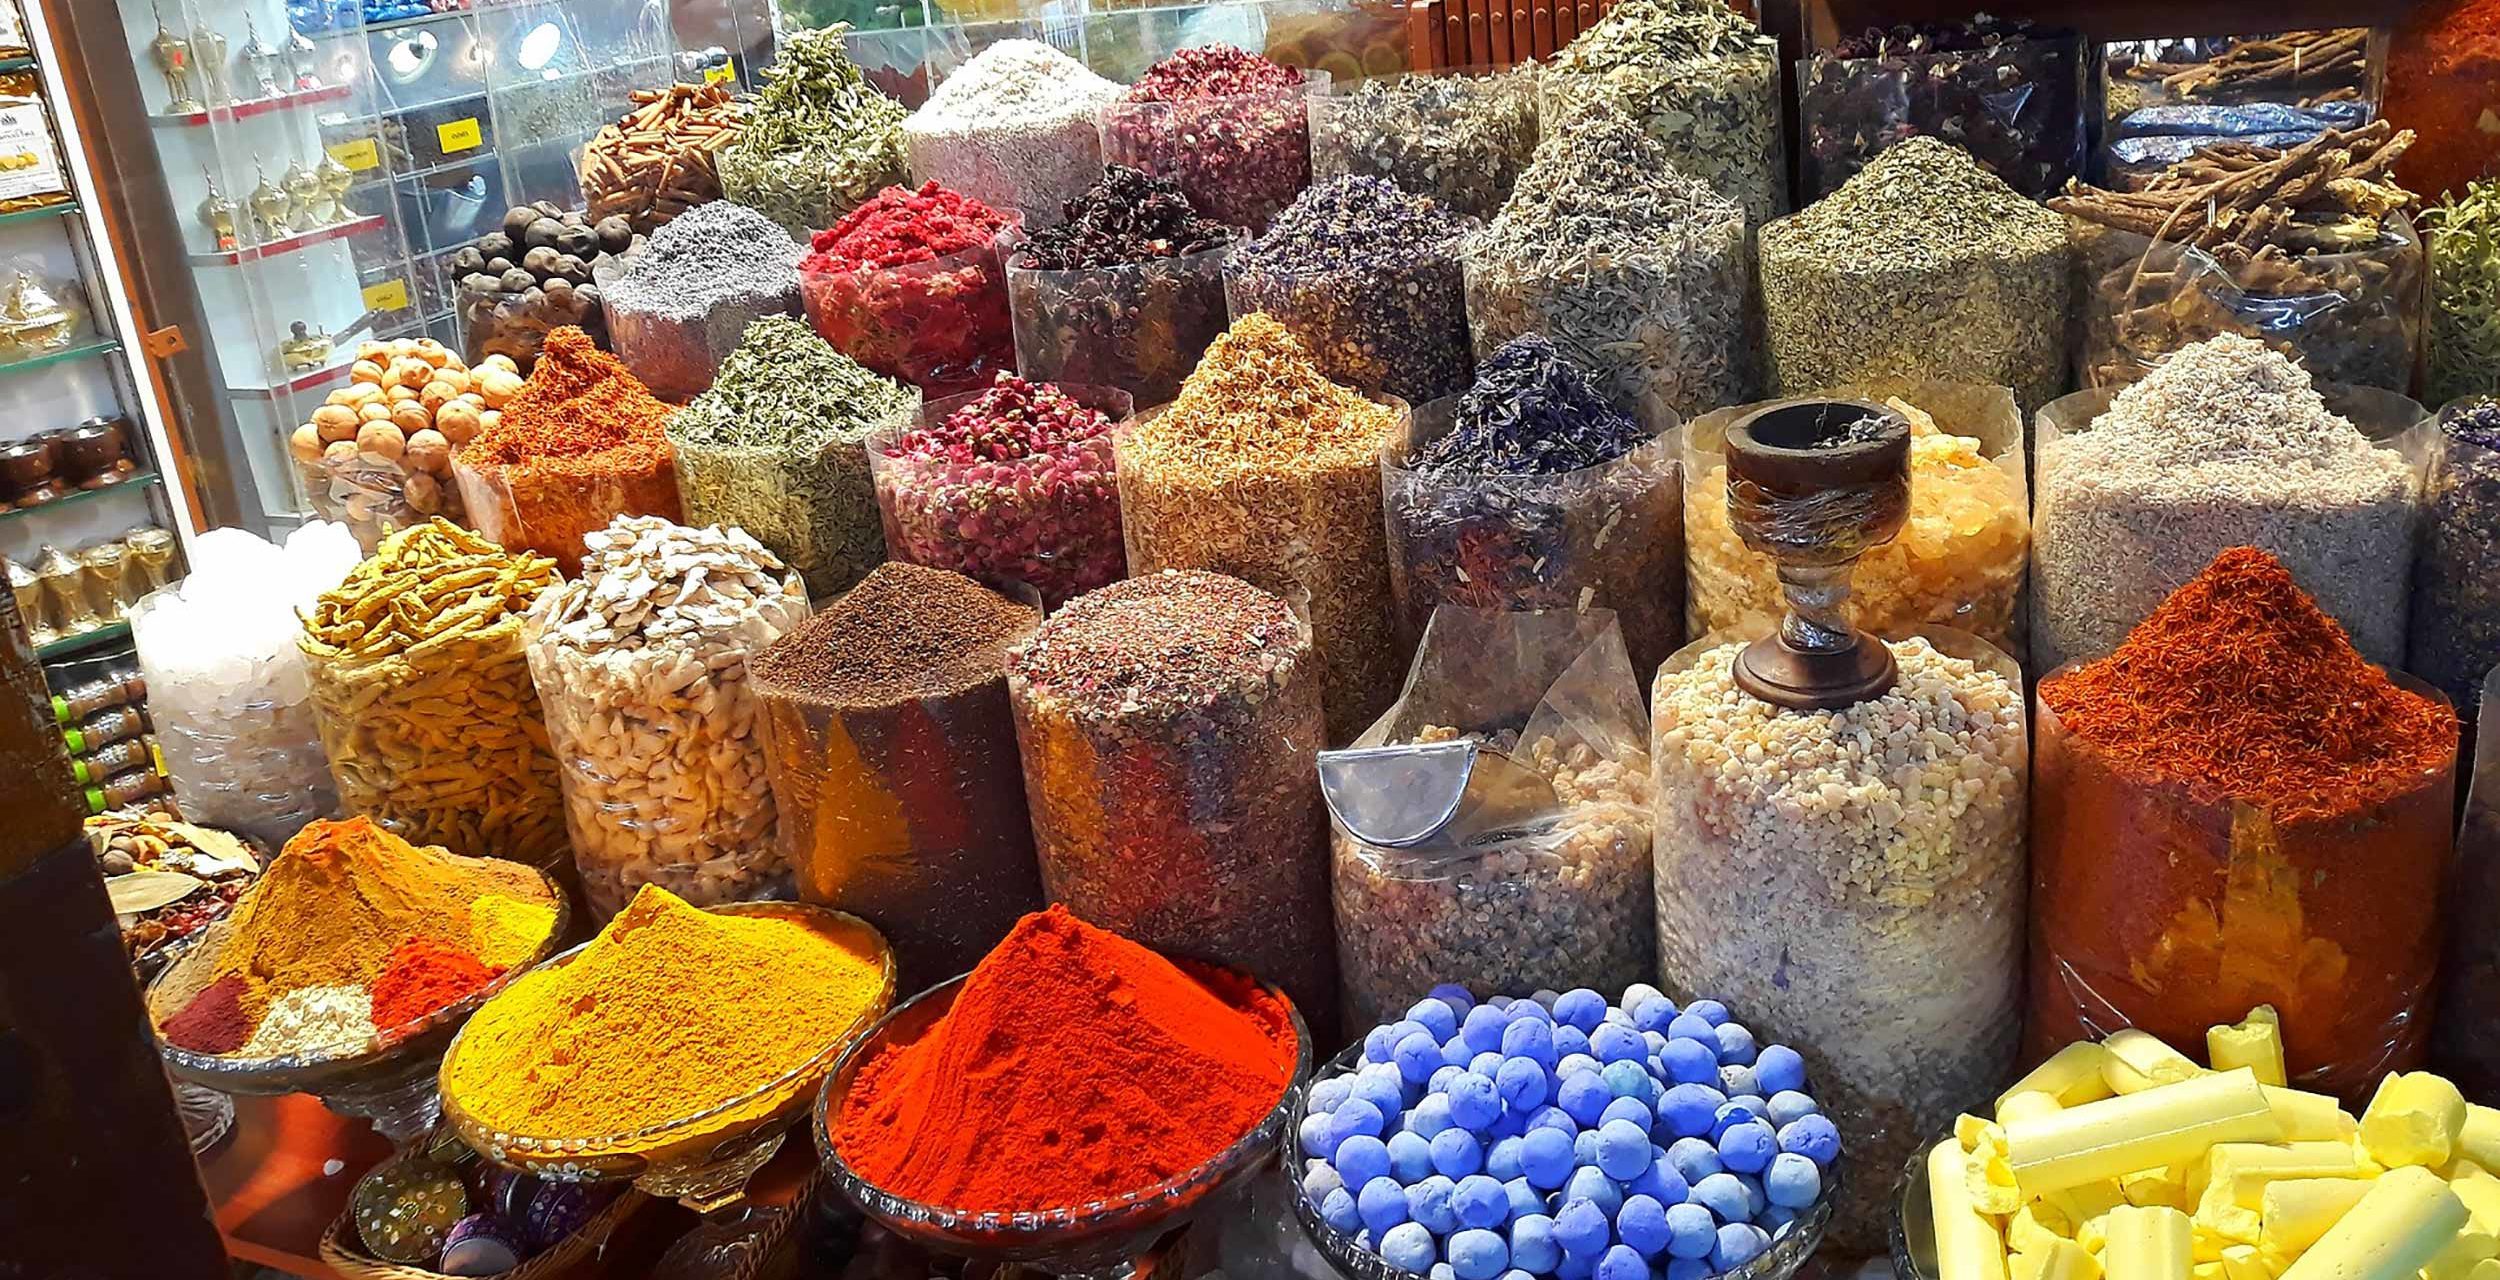 Souks Market Spices